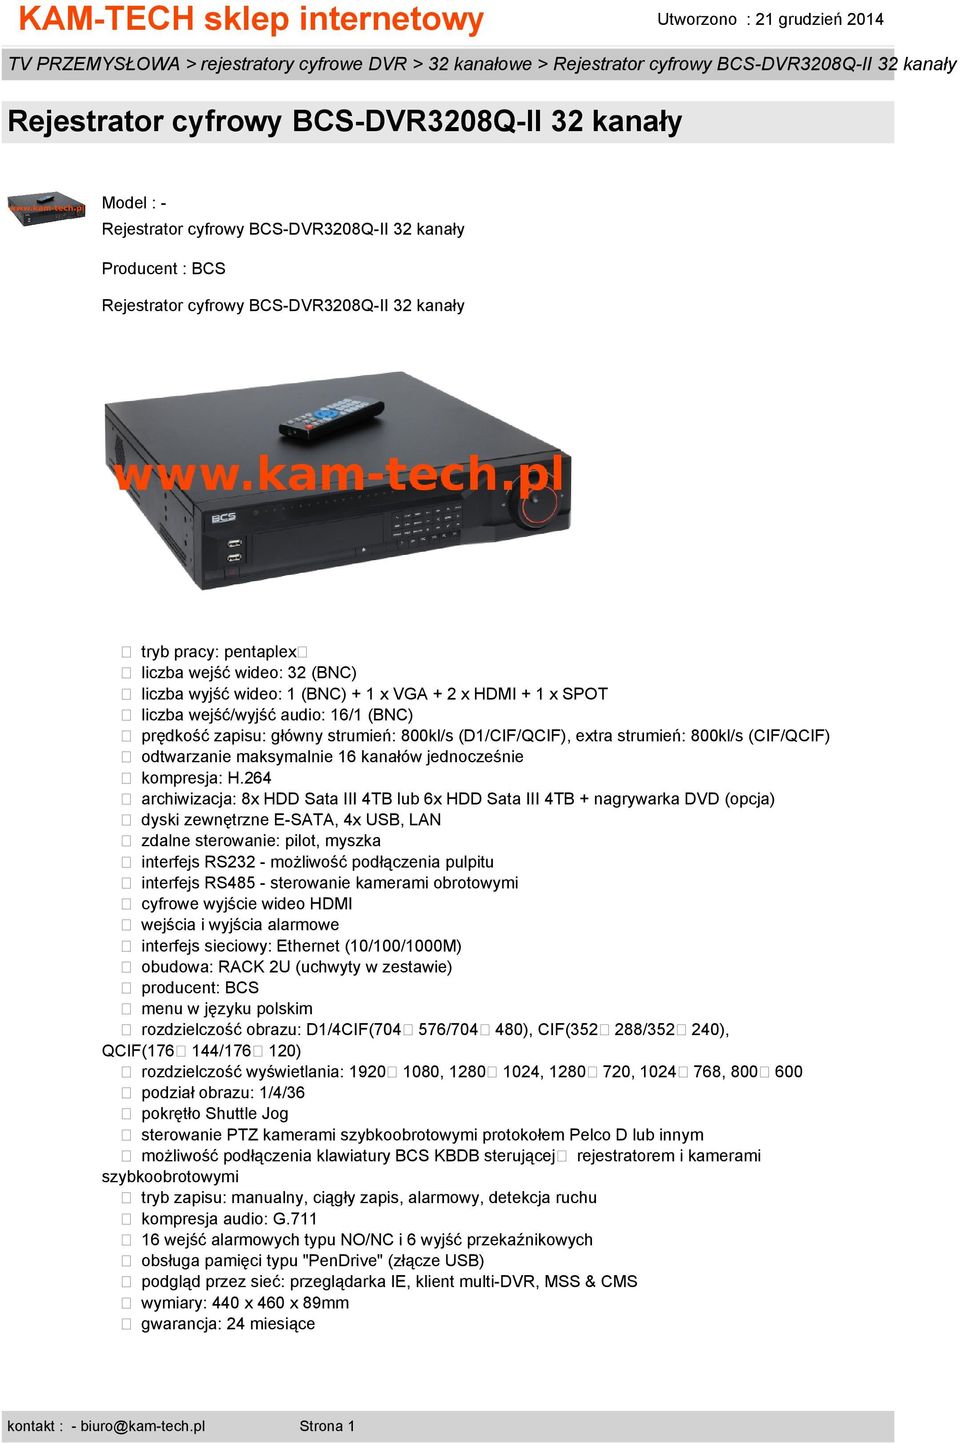 264 archiwizacja: 8x HDD Sata III 4TB lub 6x HDD Sata III 4TB + nagrywarka DVD (opcja) dyski zewnętrzne E-SATA, 4x USB, LAN zdalne sterowanie: pilot, myszka interfejs RS232 - możliwość podłączenia